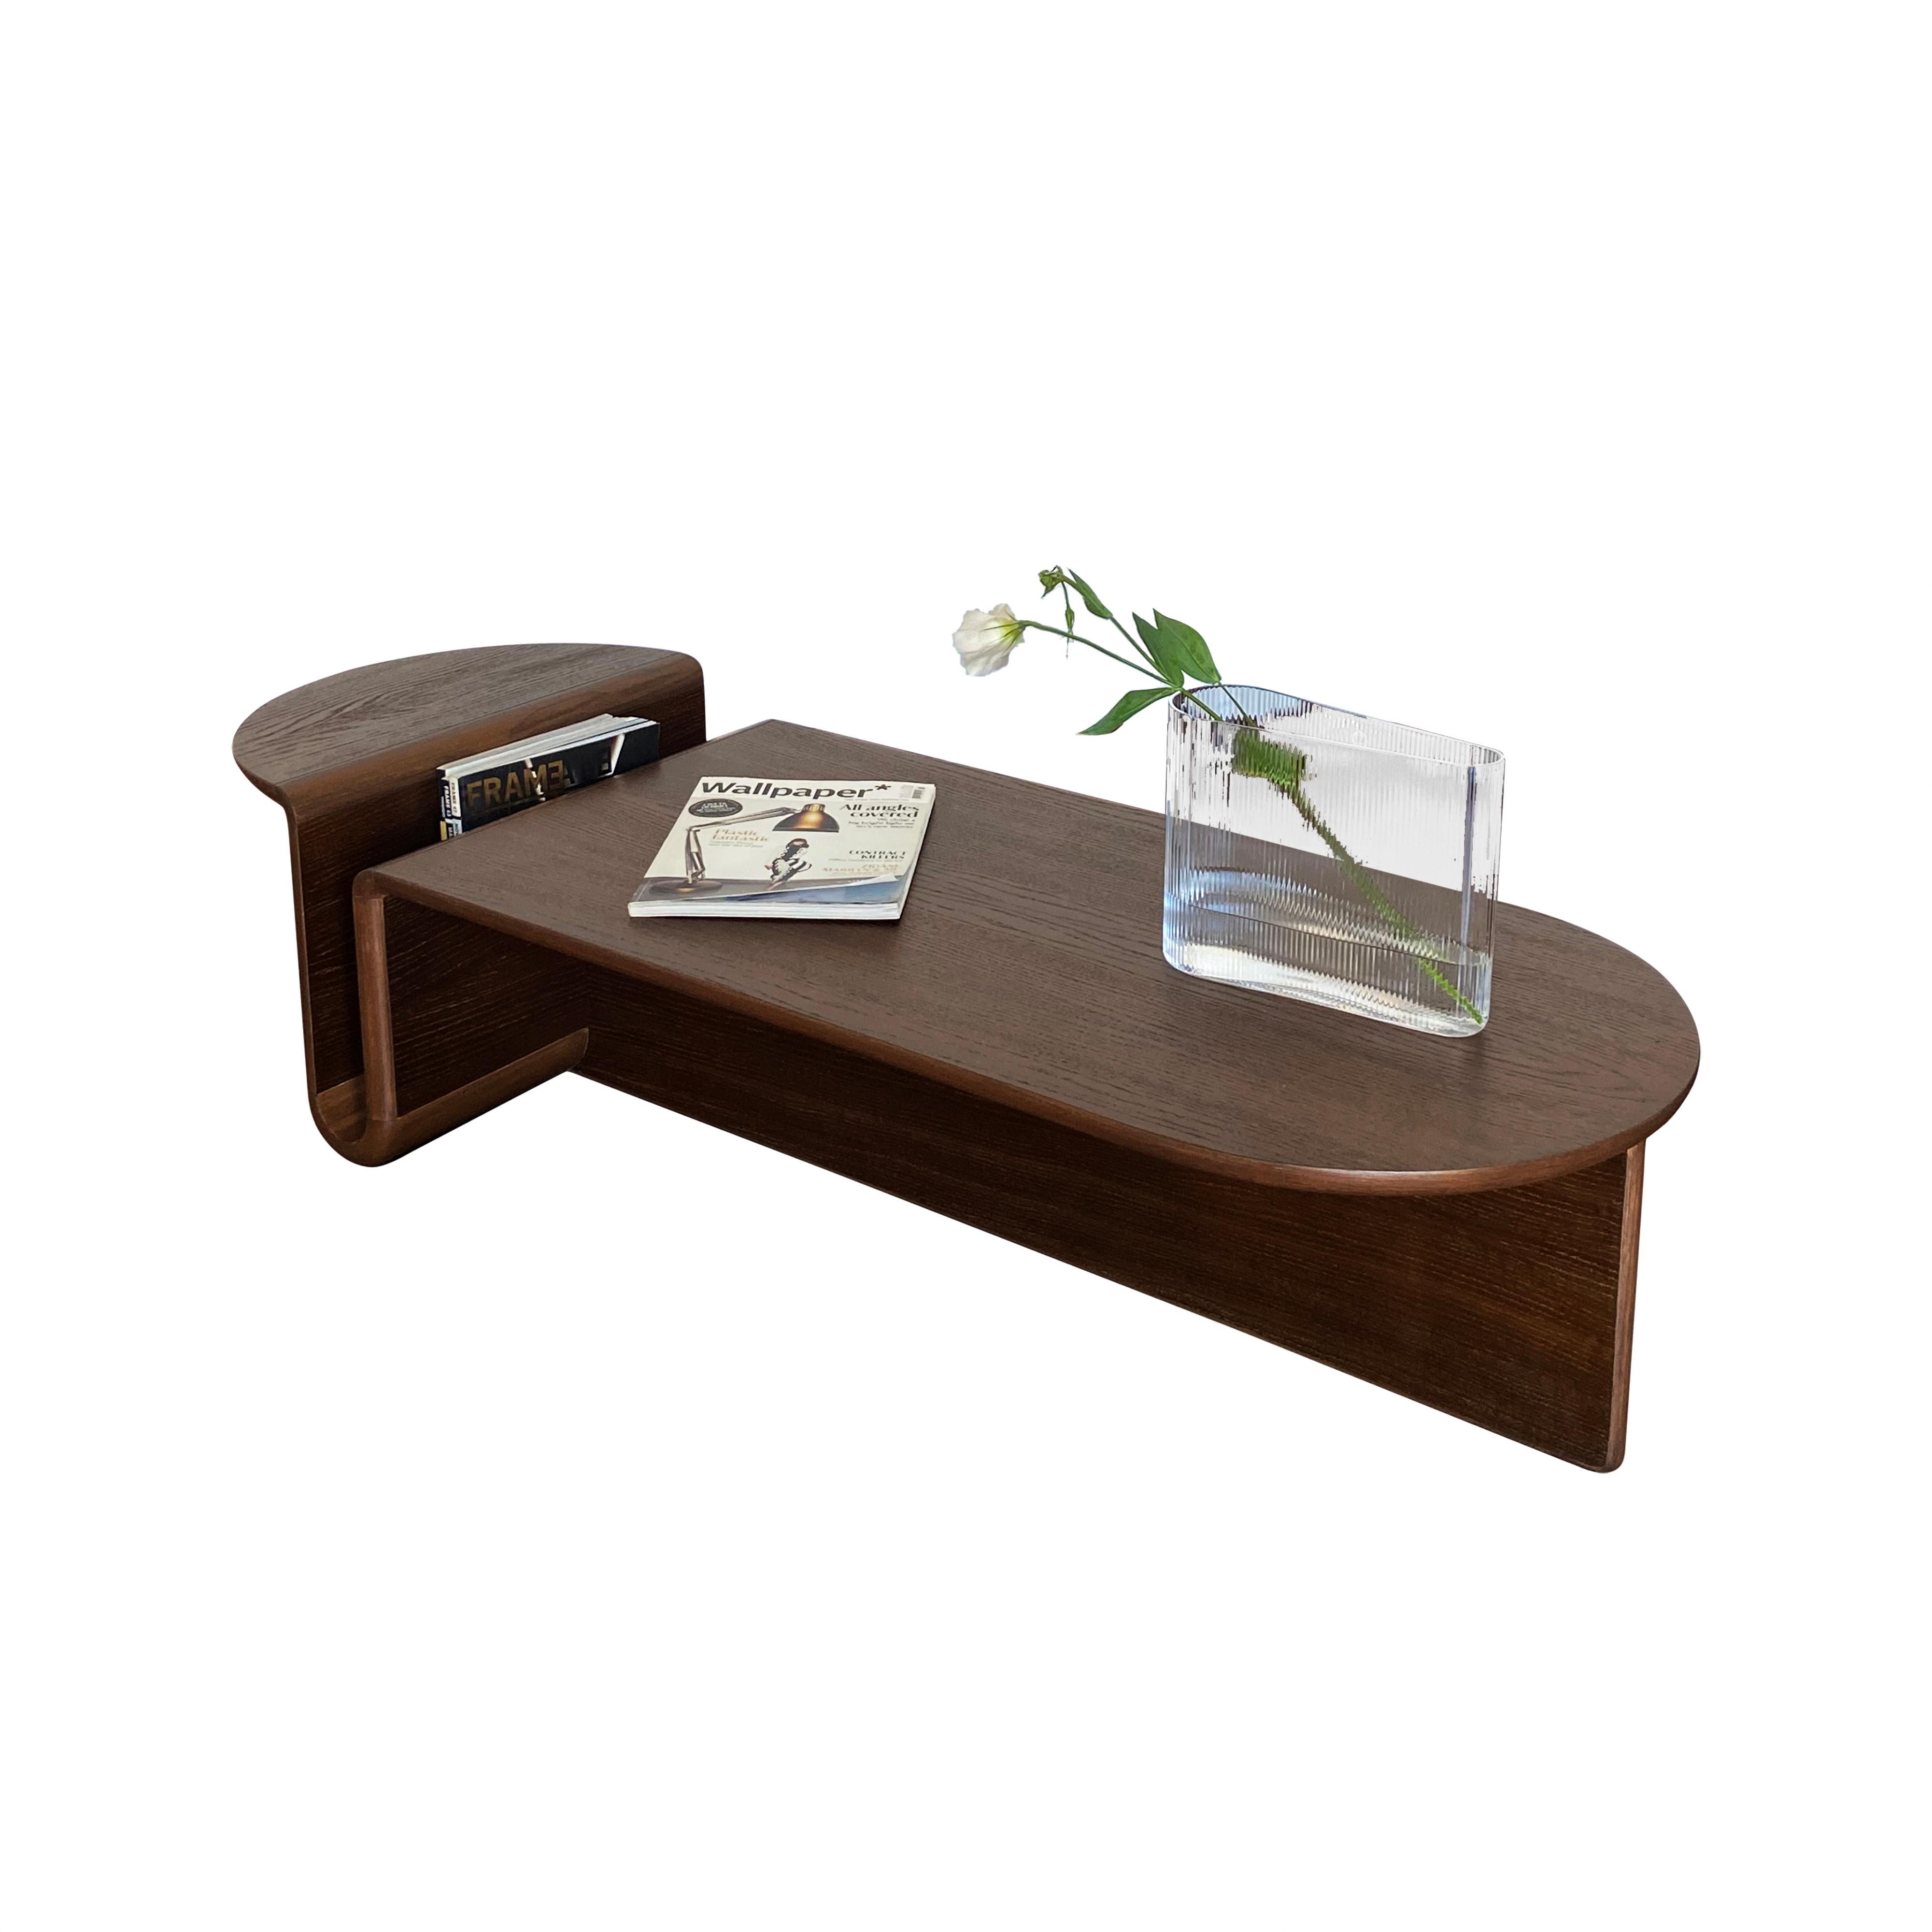 Kanyon est une table basse authentique qui allie fonctionnalité et posture sculpturale avec simplicité, beaux matériaux et artisanat exquis. 

Inspiré par la beauté topographique des structures des canyons, le design traduit les caractéristiques